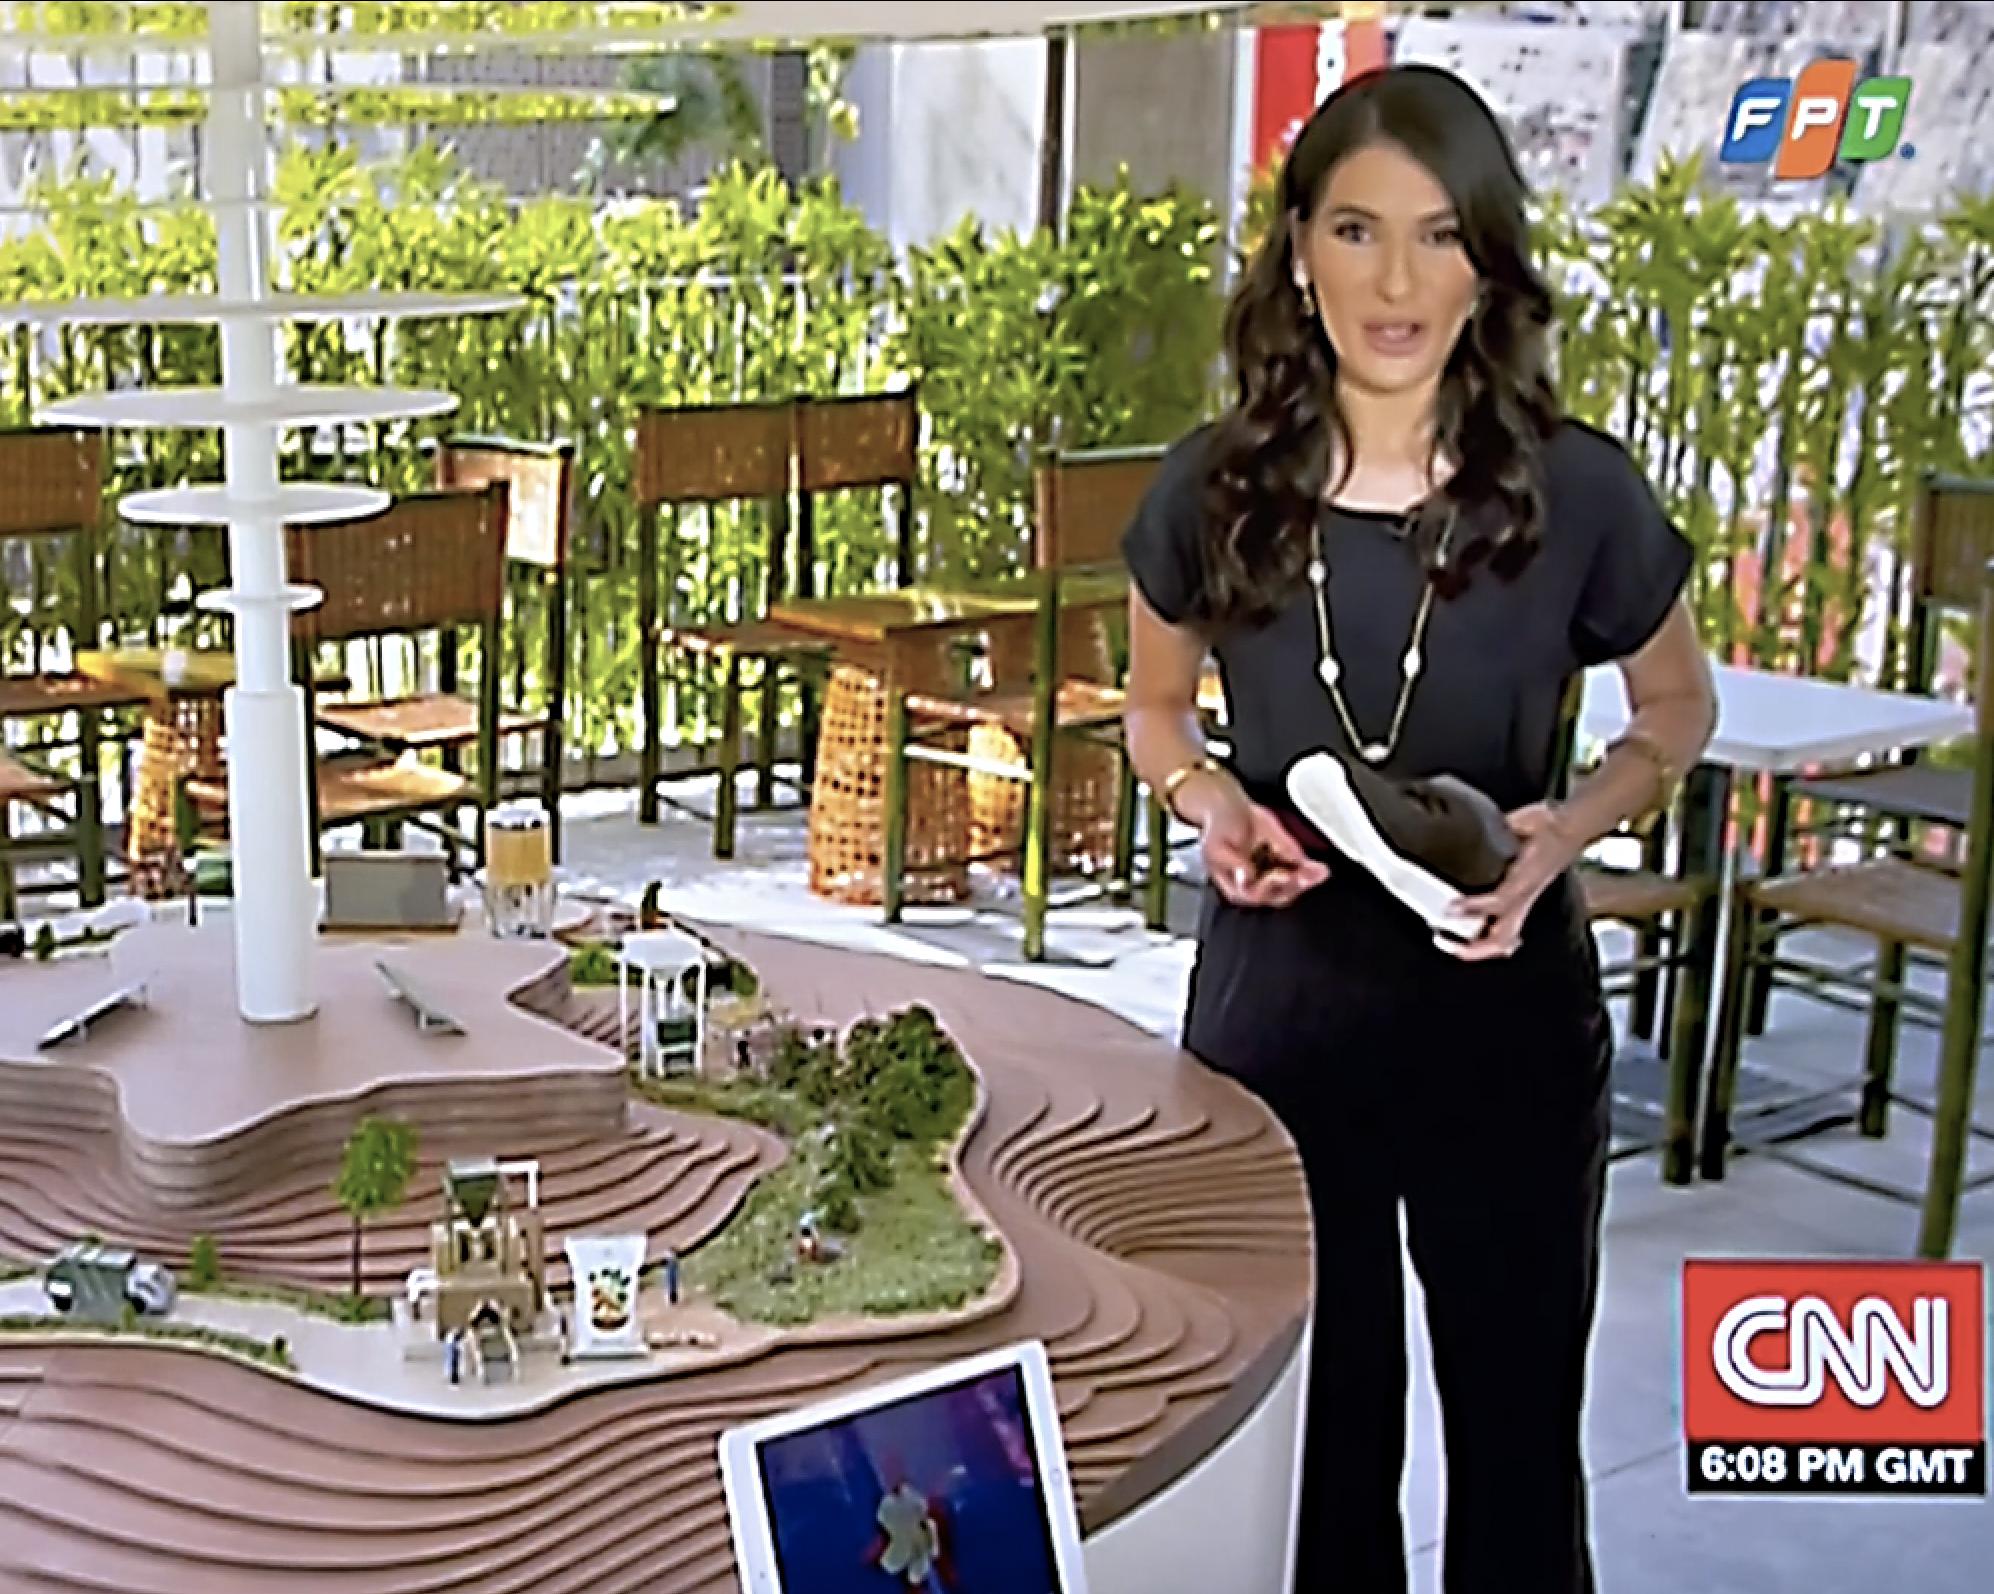 Nhà Triển lãm Việt Nam “lên sóng” chương trình về phát kiến mới của CNN